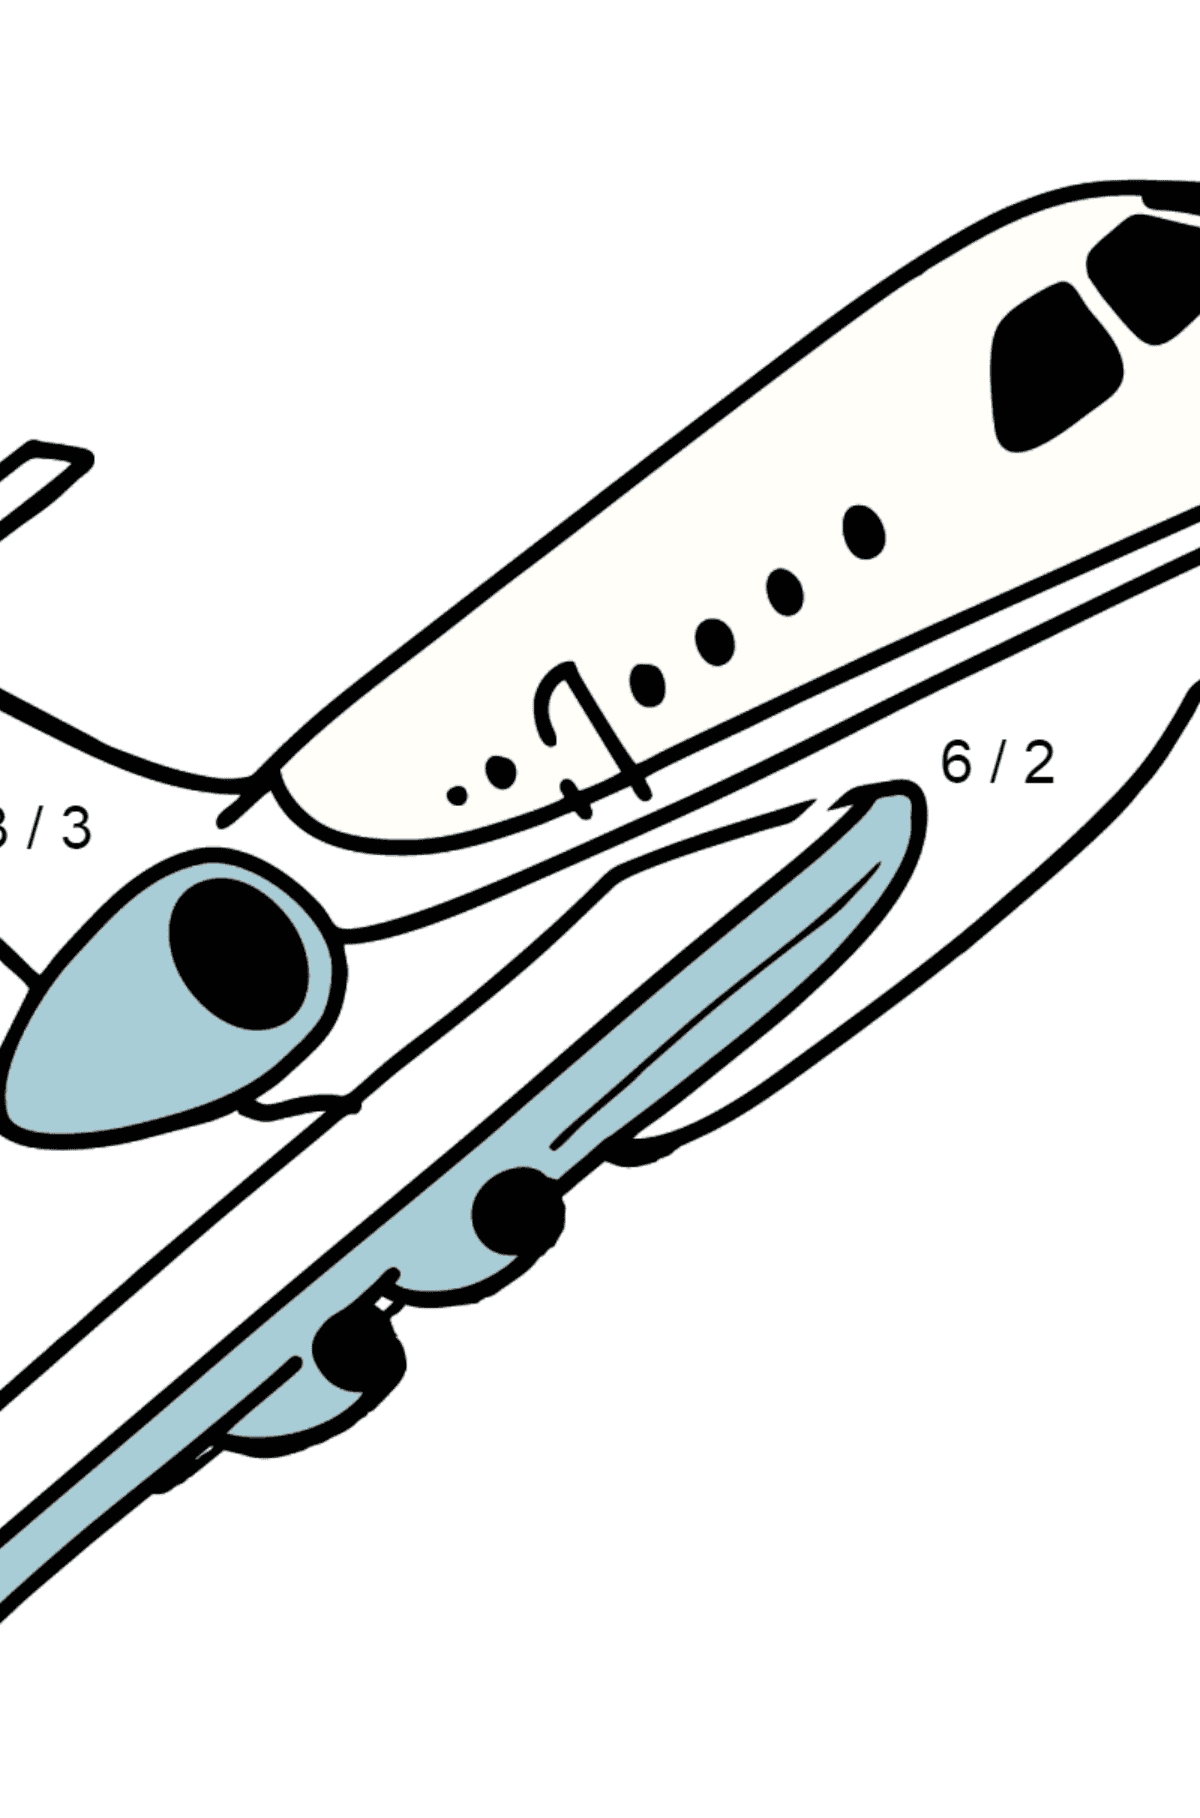 Desenho para colorir do Airbus Airplane - Colorindo com Matemática - Divisão para Crianças